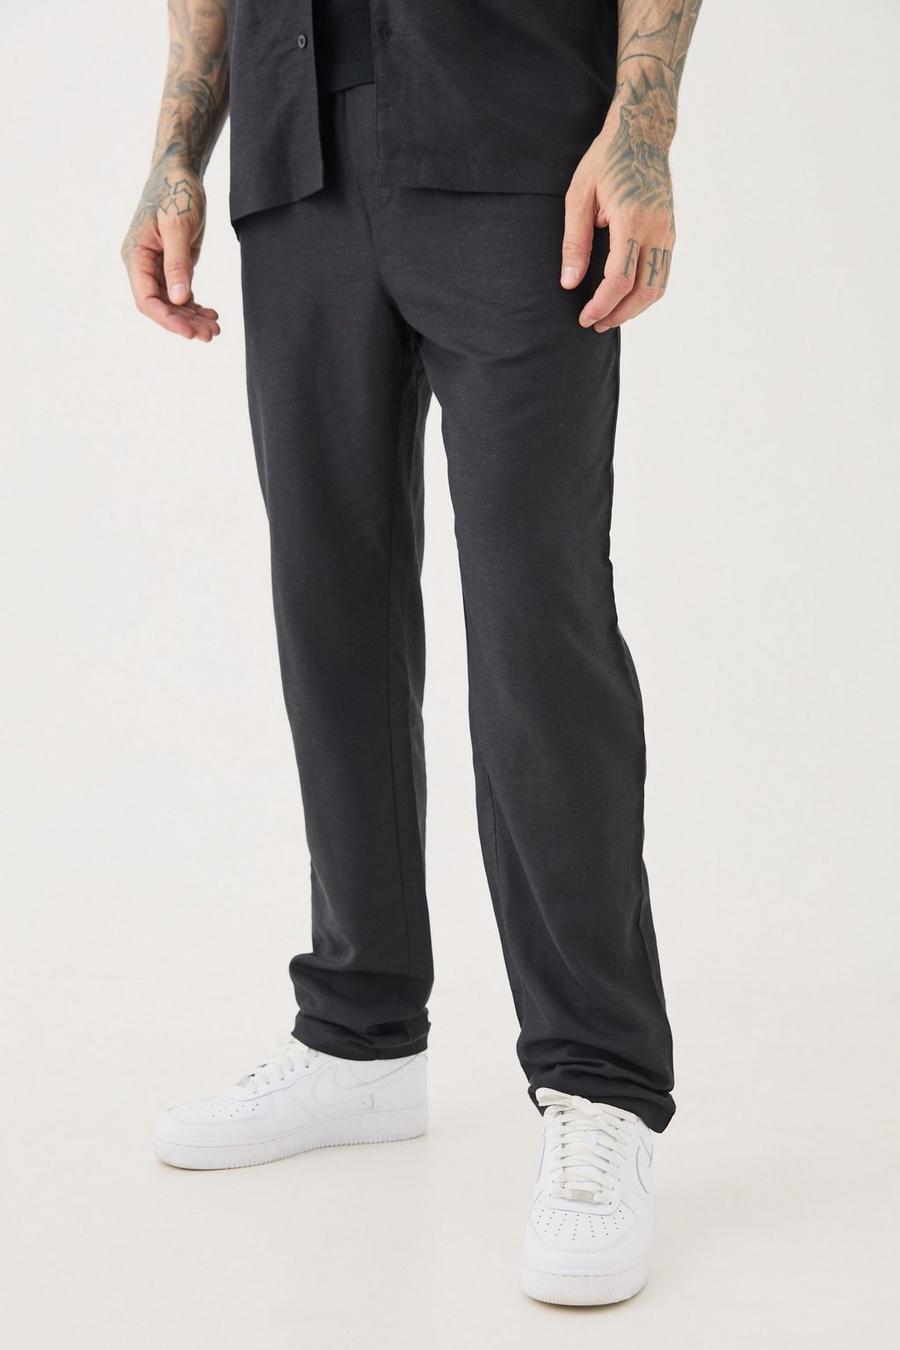 Pantalón Tall de lino ajustado con cintura elástica en negro, Black